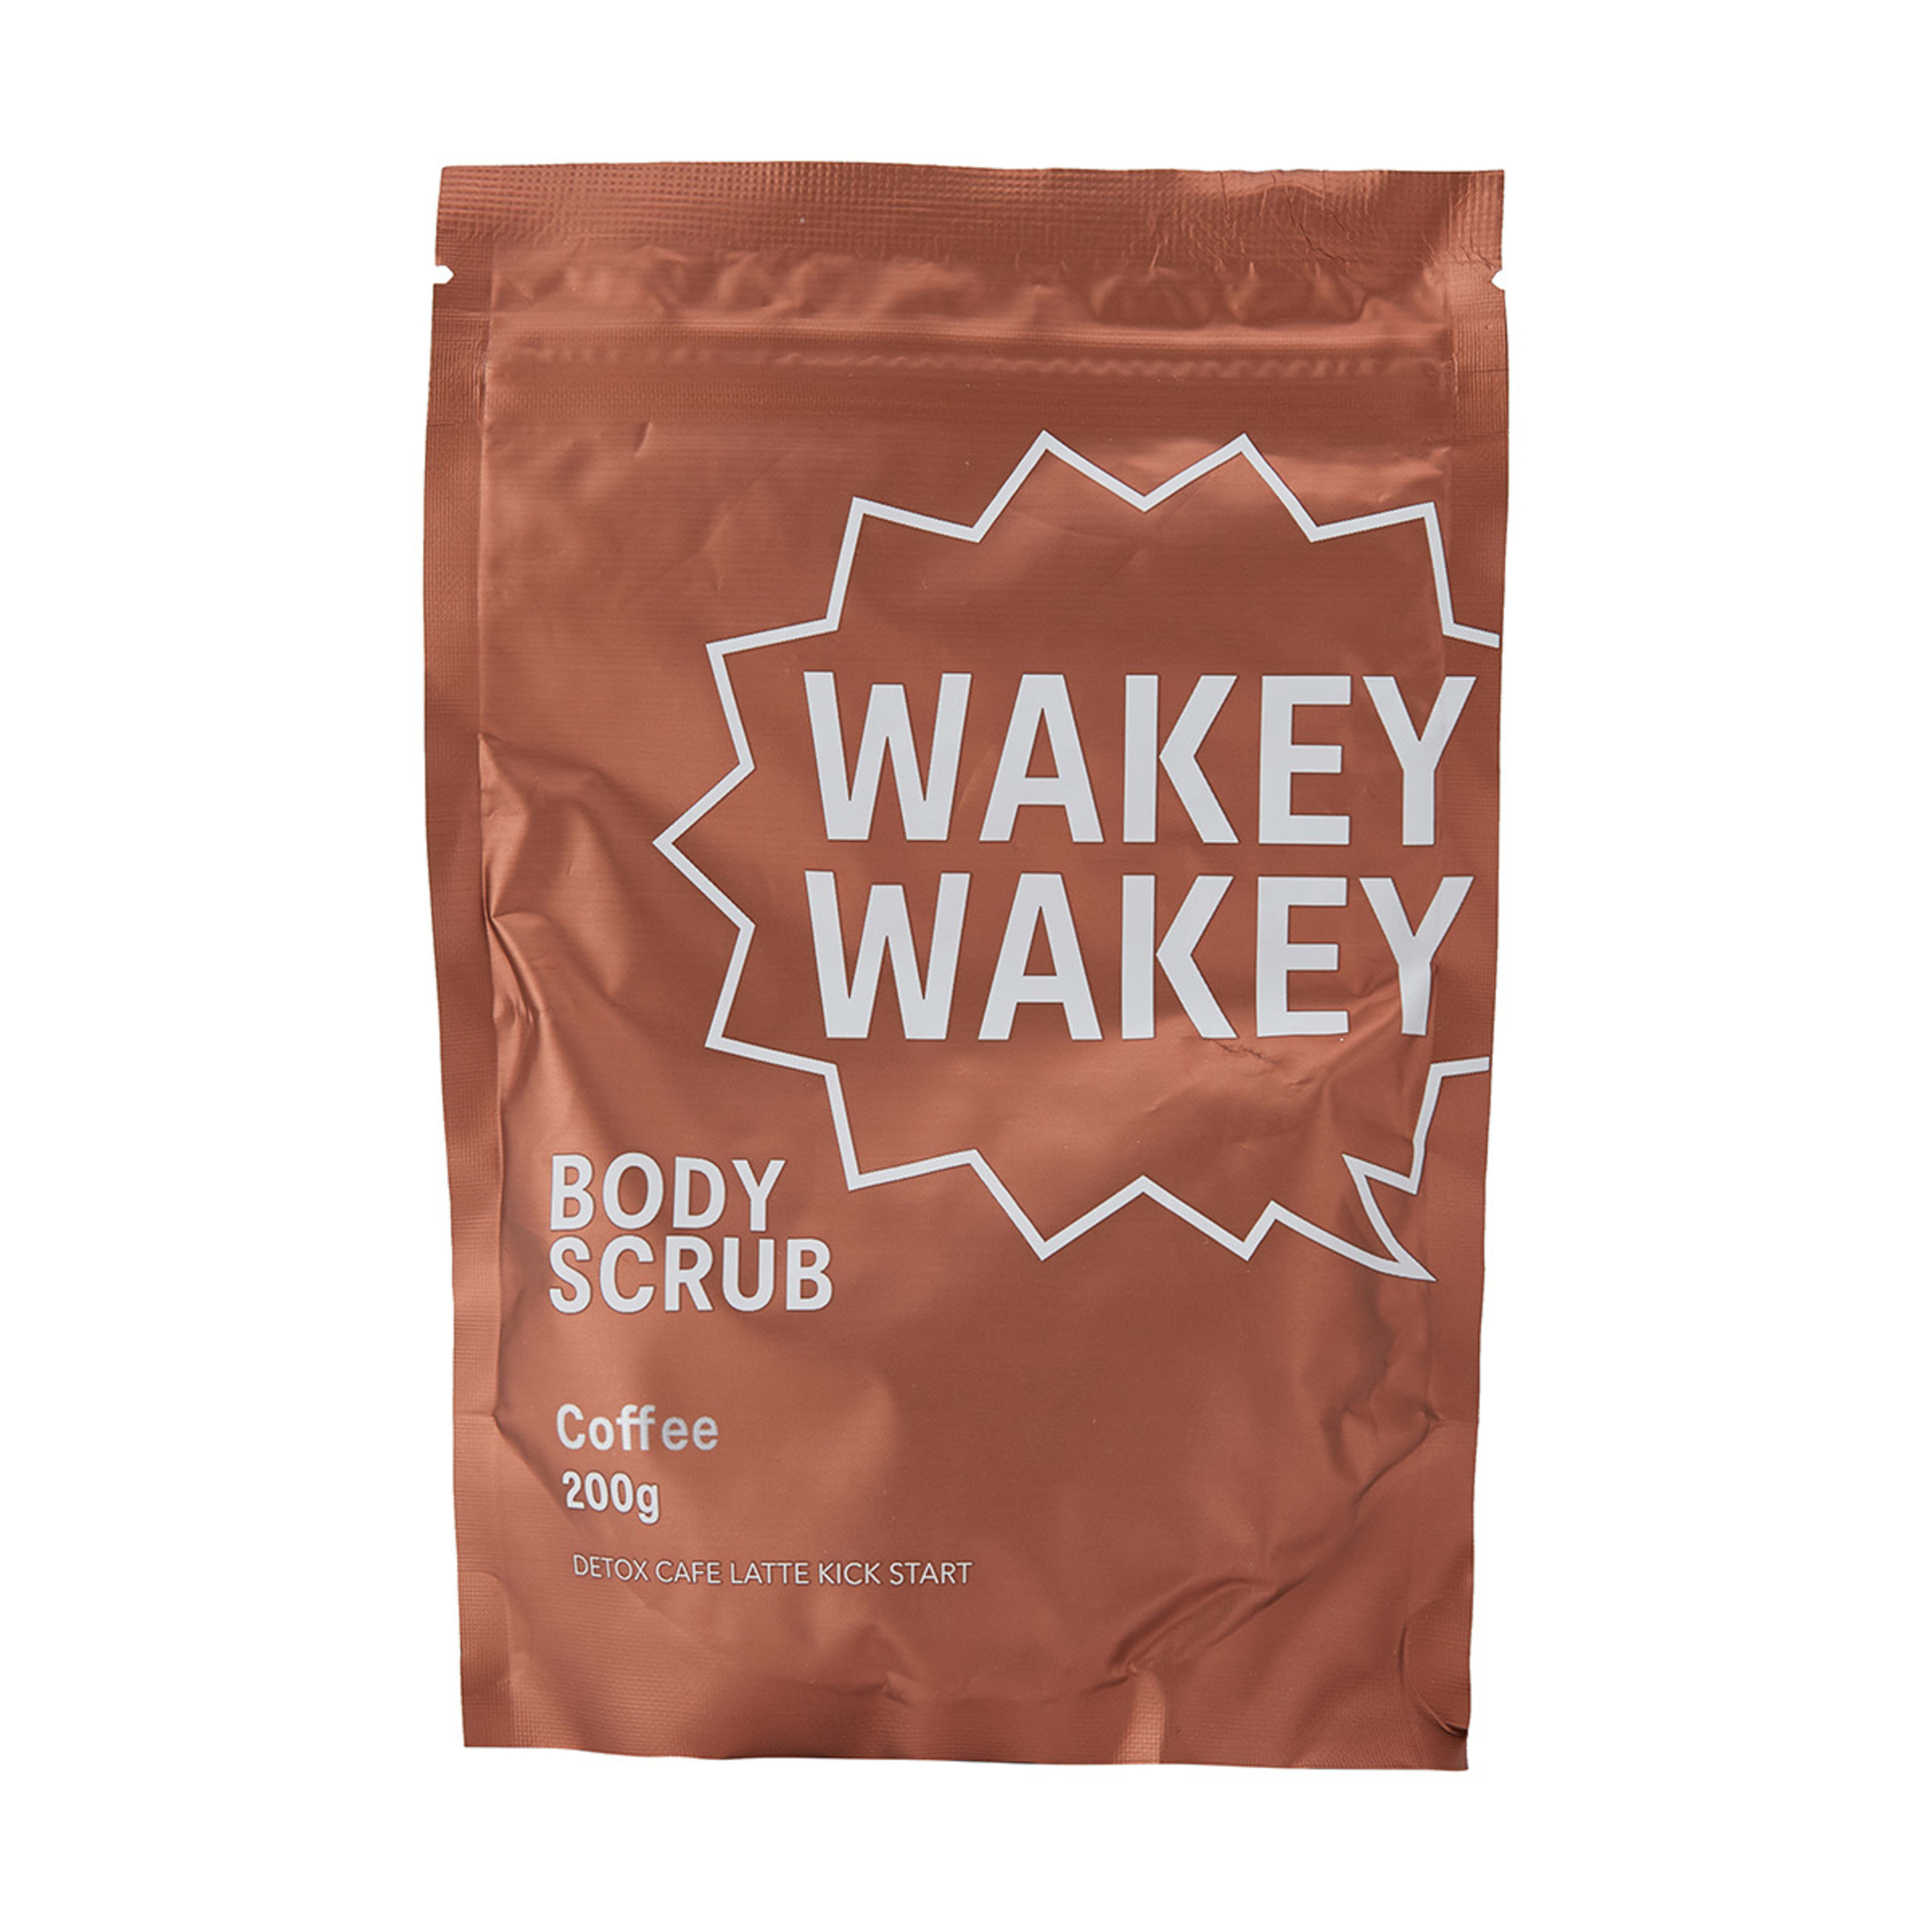 Wakey Wakey Body Scrub 200g Coffee Scent Kmart